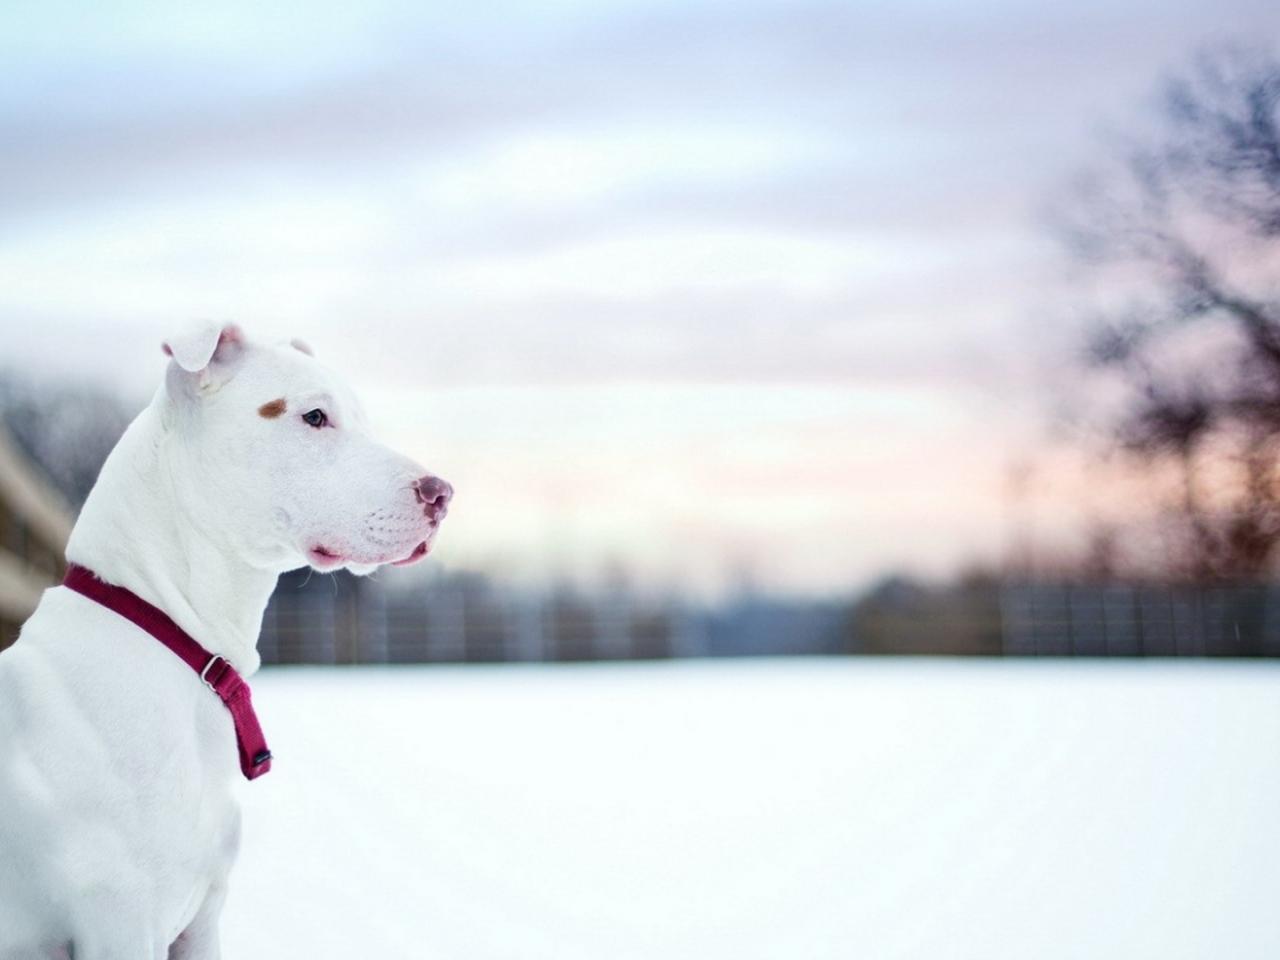 обои Красивый белый пес фото